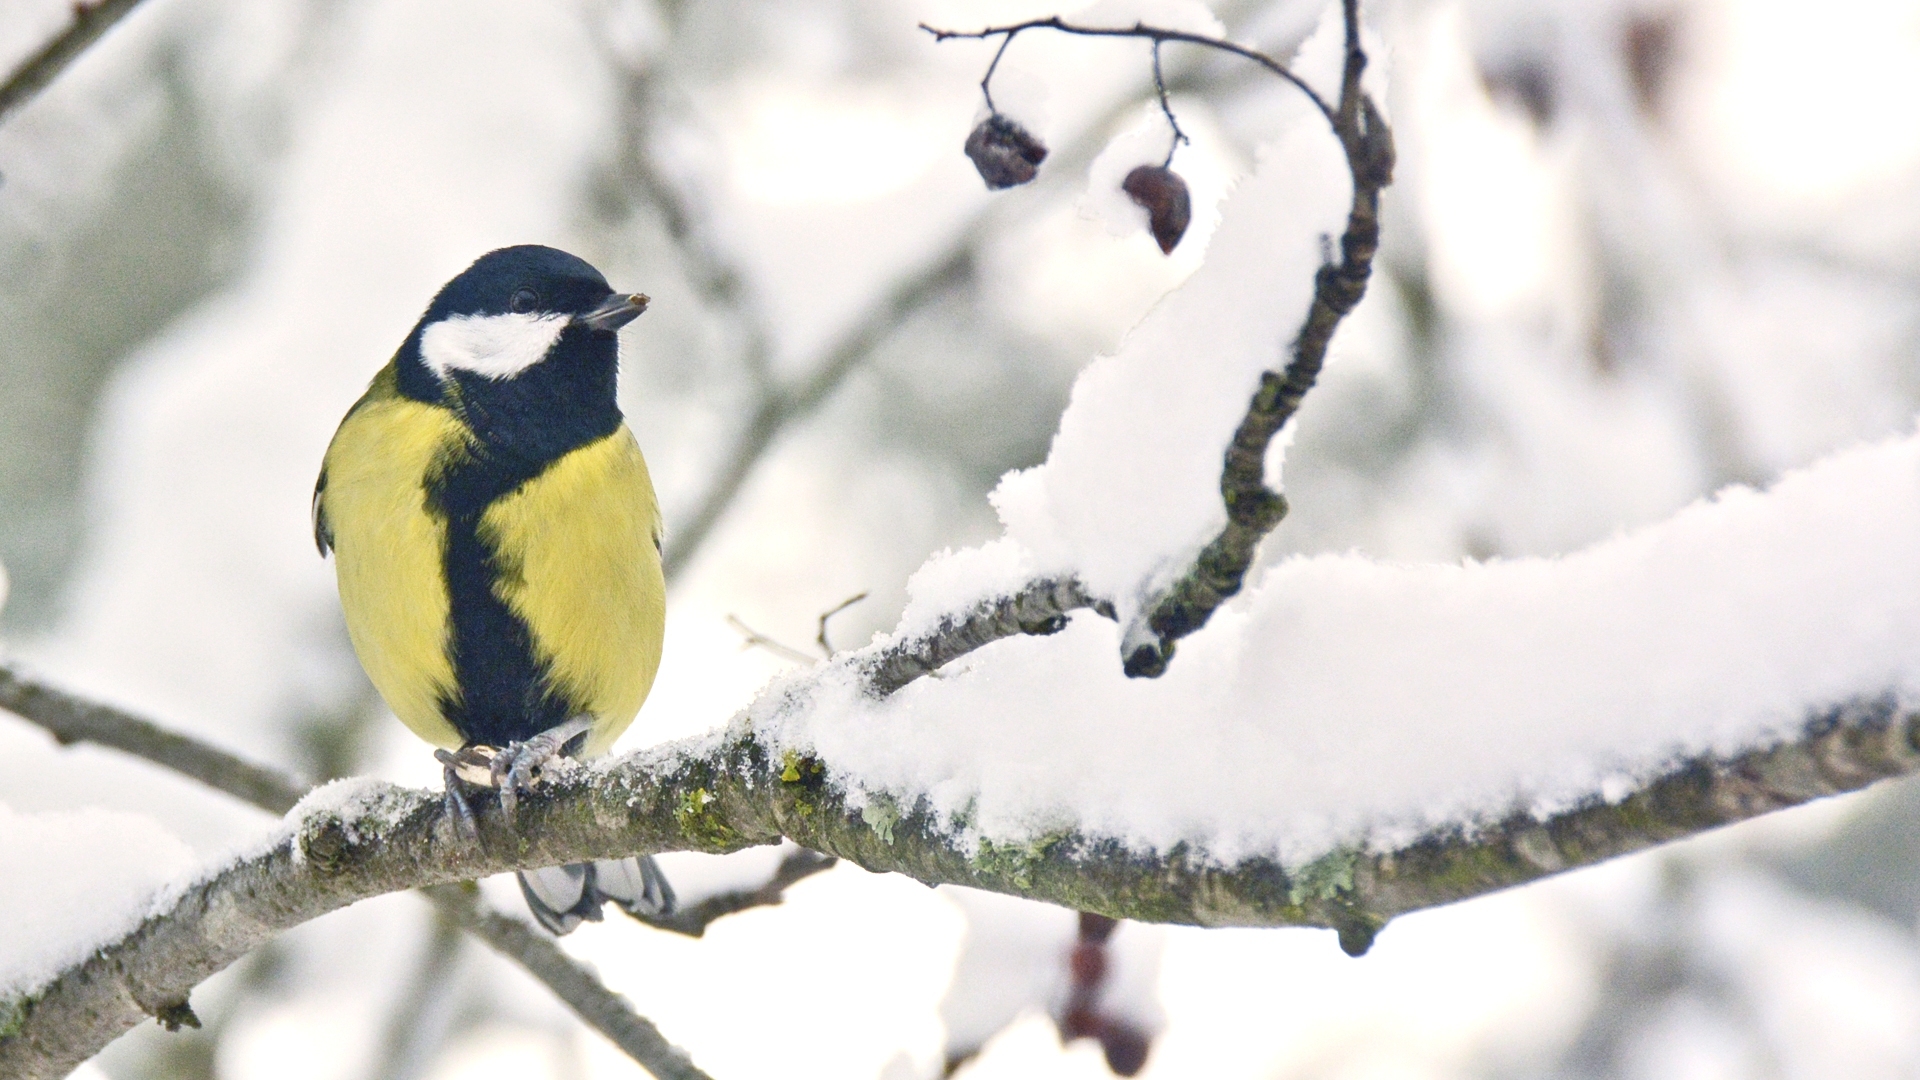 Vogelbeobachter an diesem Wochenende "Finnlands beliebtestes Naturereignis"